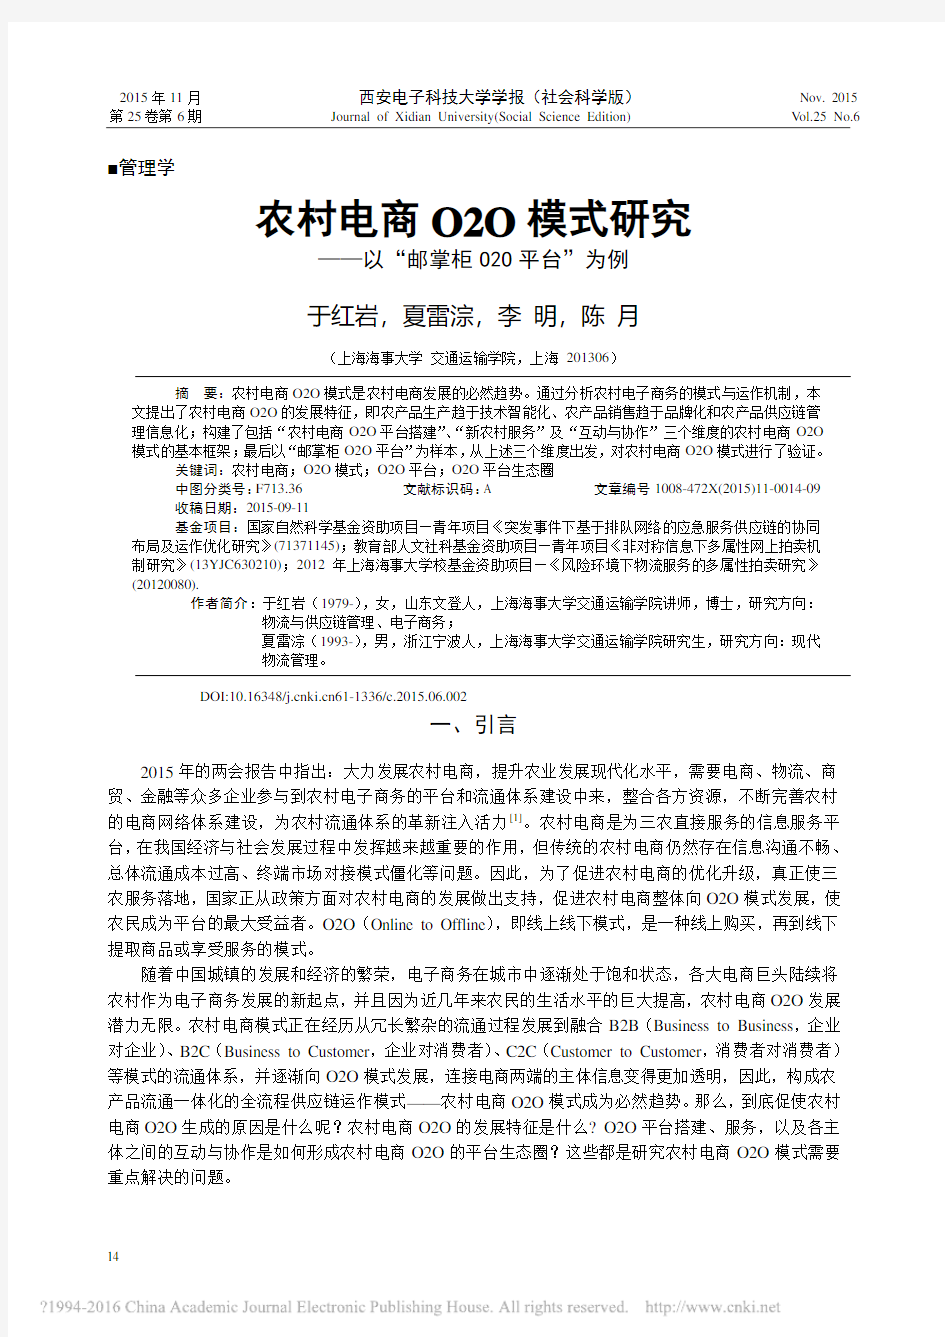 农村电商O2O模式研究_以_邮掌柜O2O平台_为例_于红岩